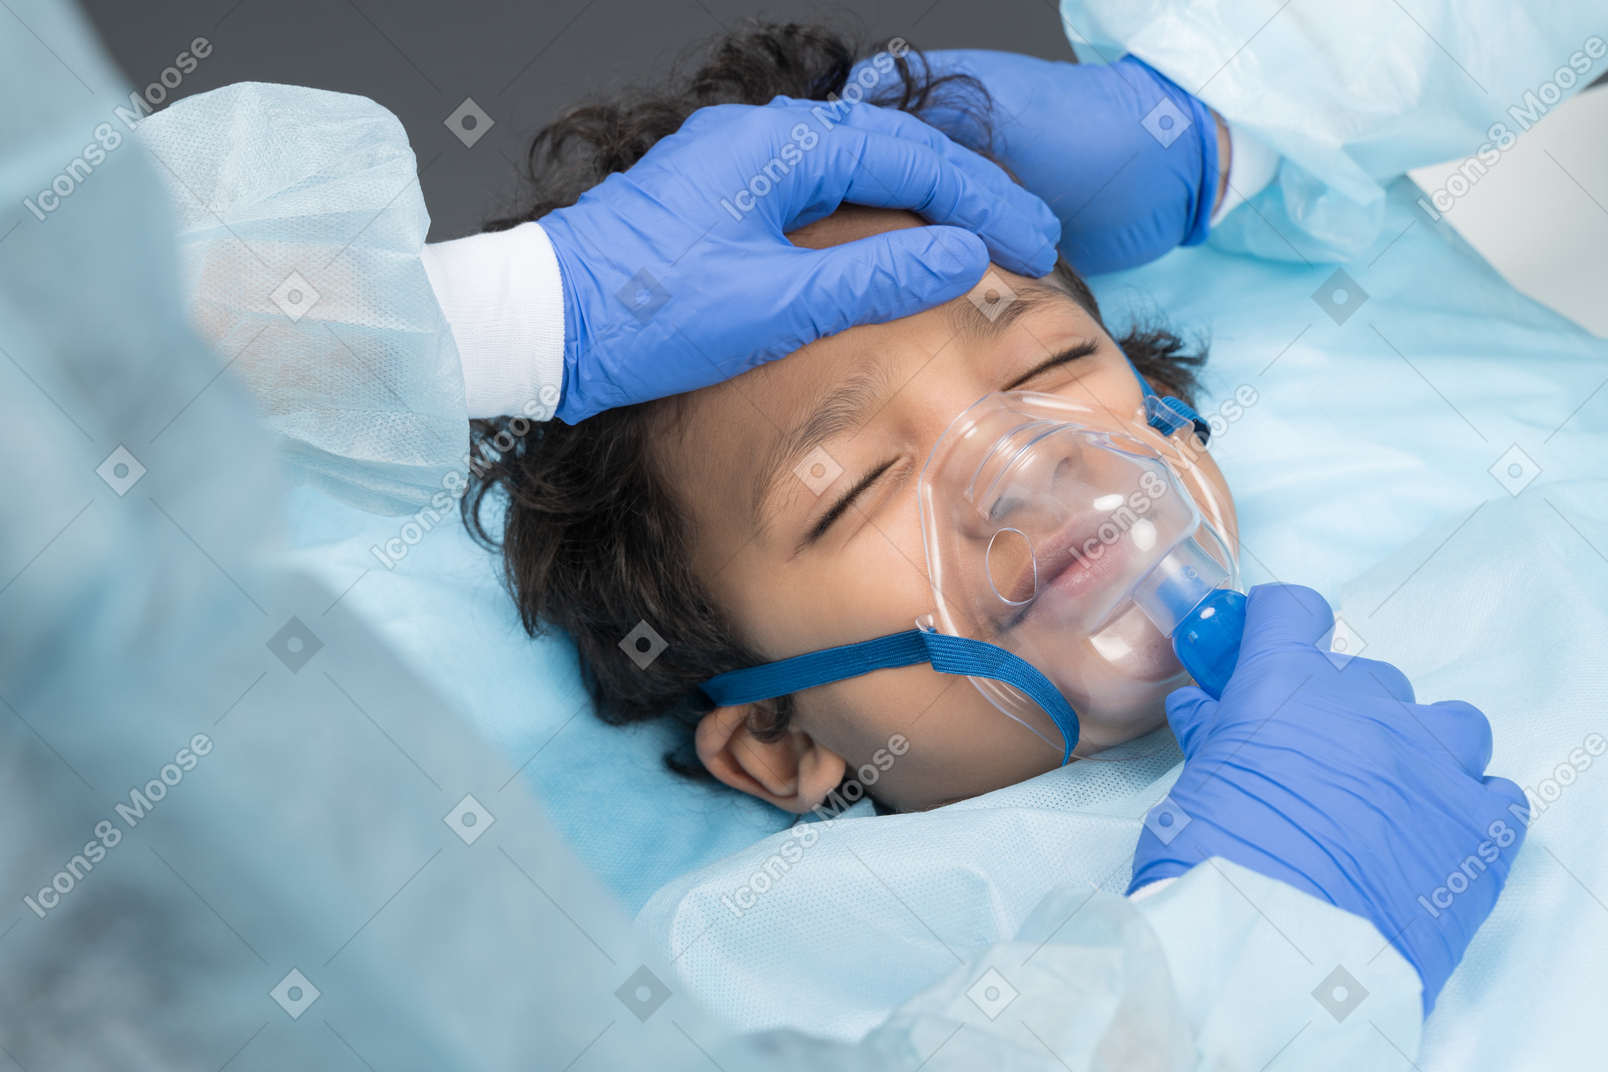 Ребенок на операционном столе